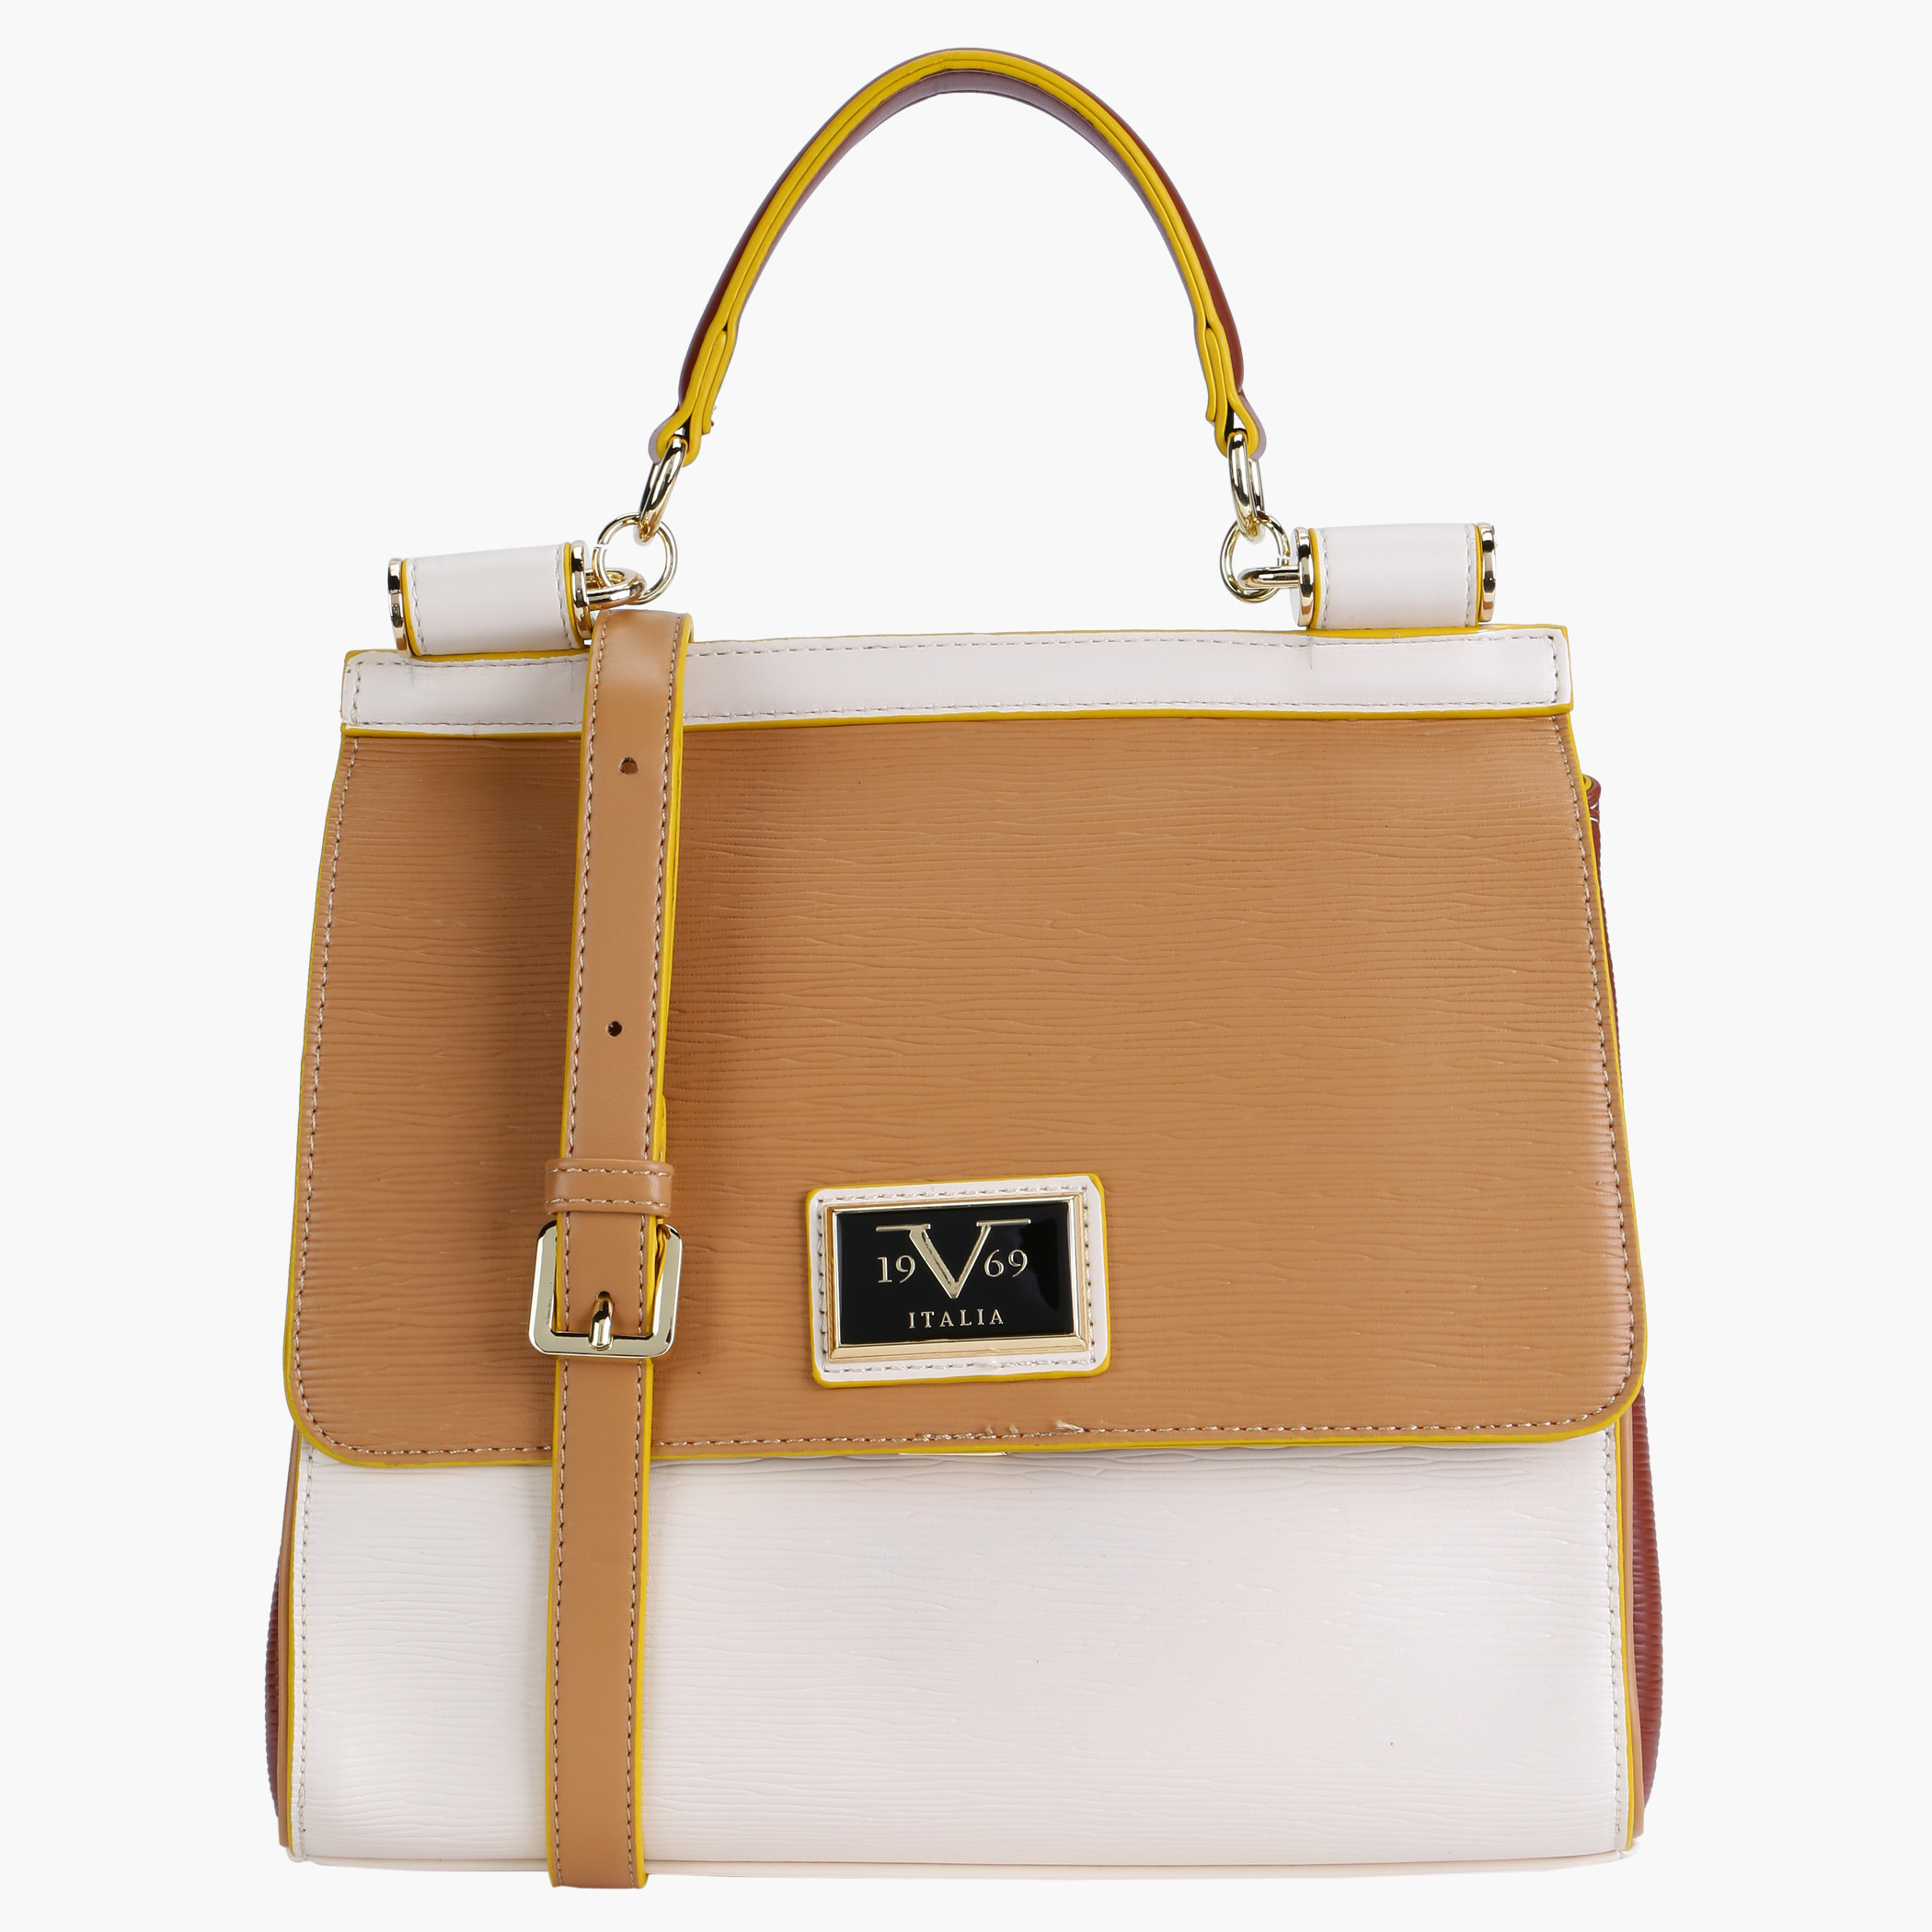 Women's Bags & 19V69 ITALIA for sale | eBay